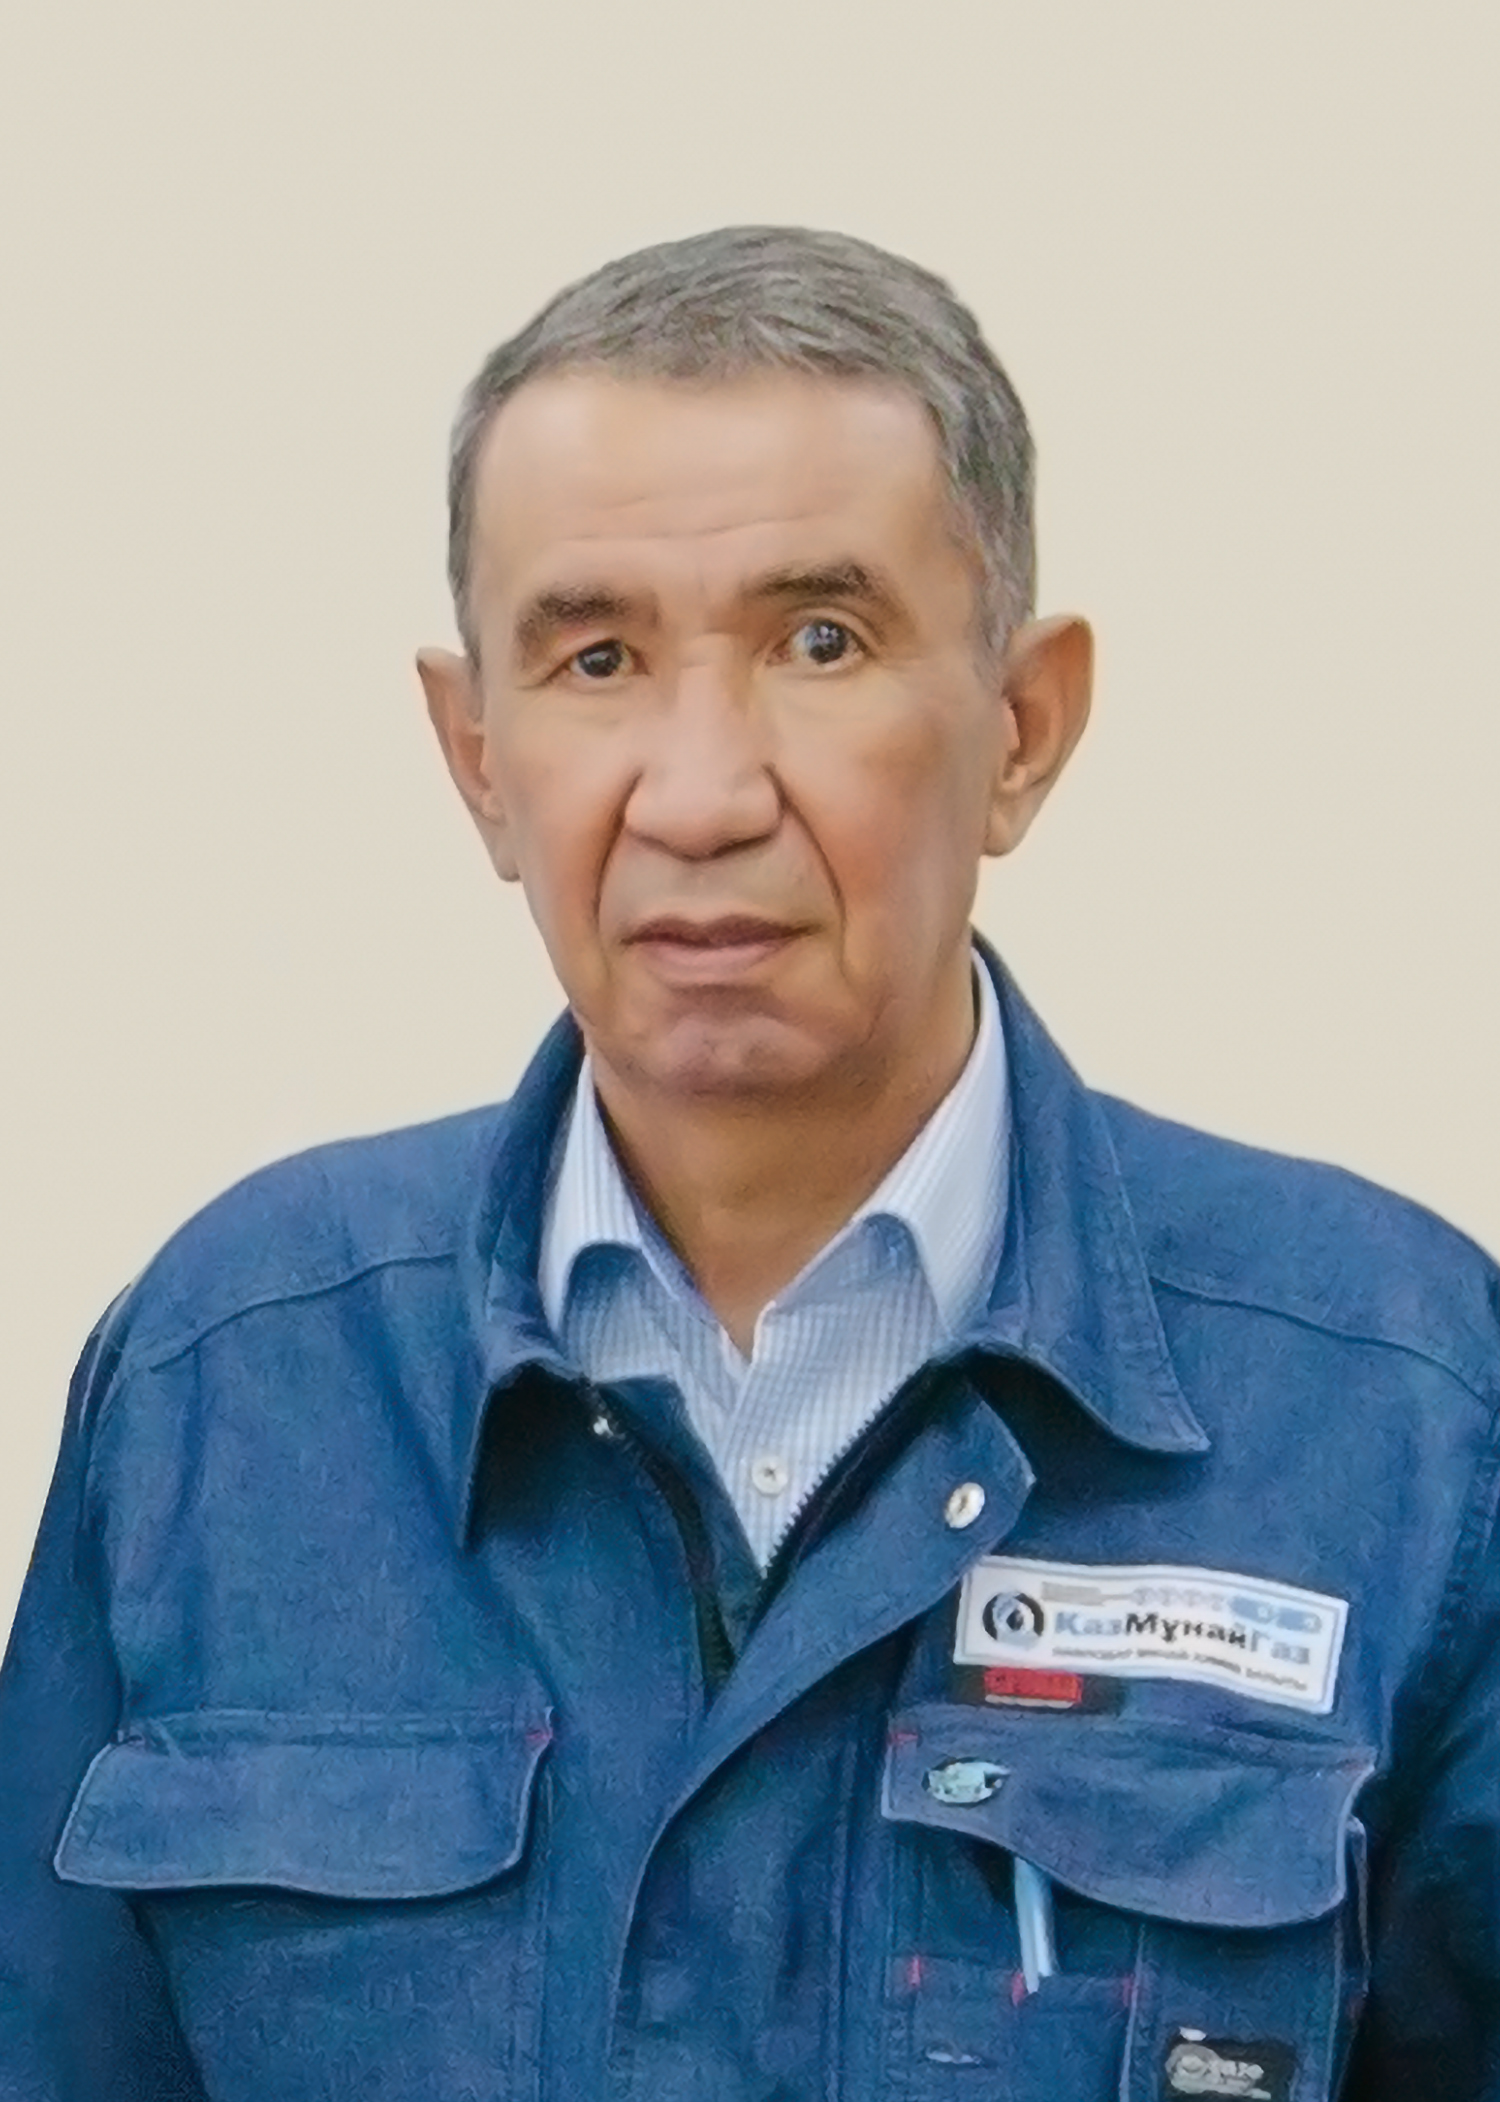 Mr. Dyussenbek Kuzhekbayev